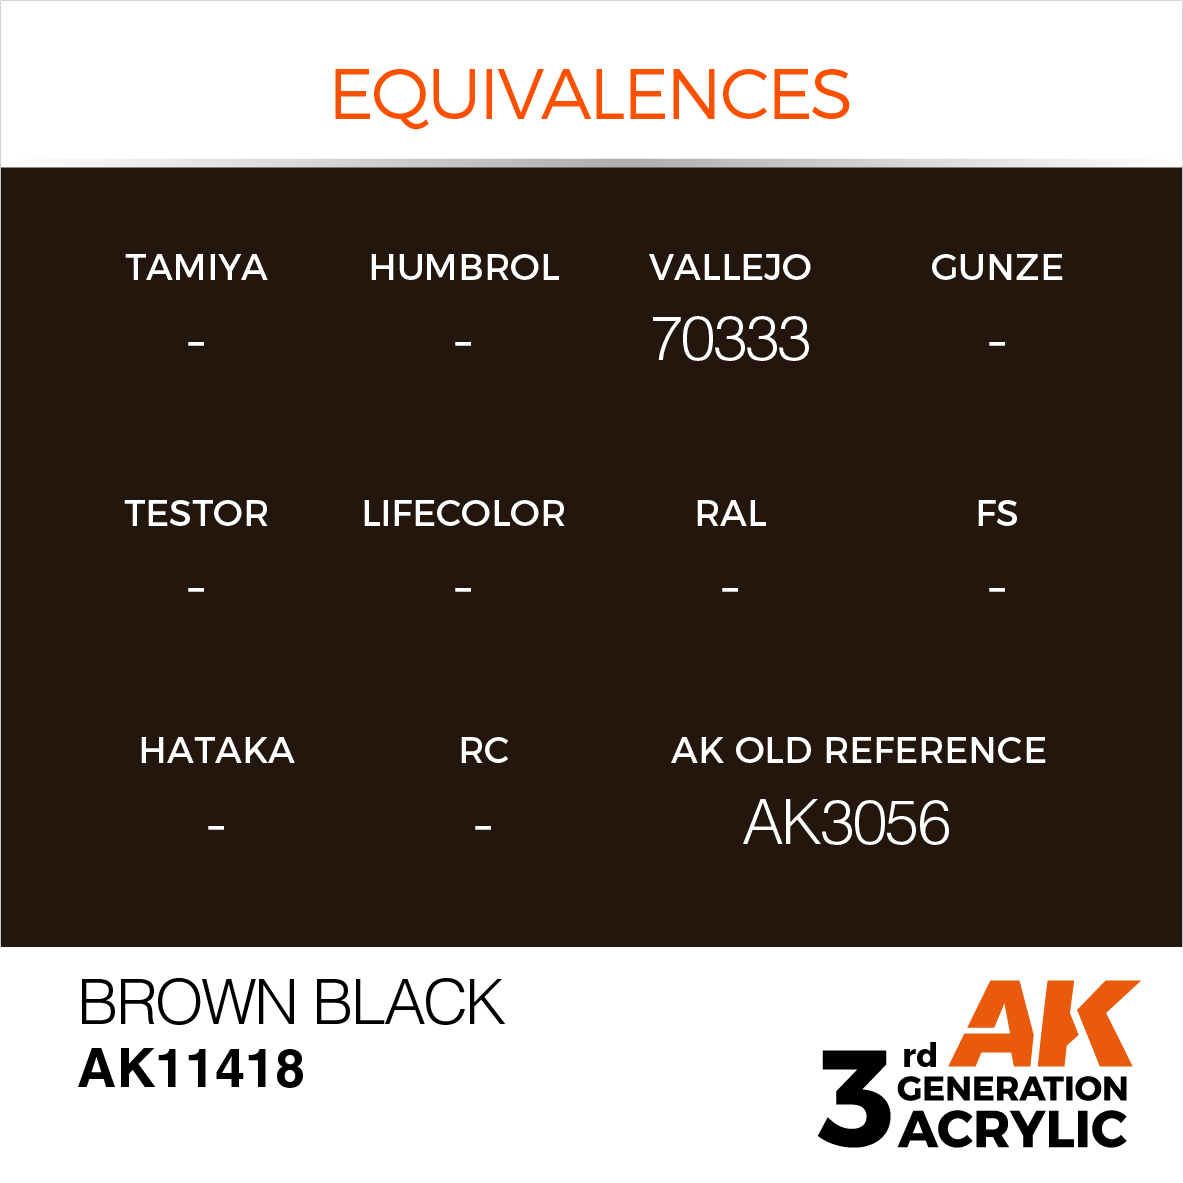 Brown Black – Figures